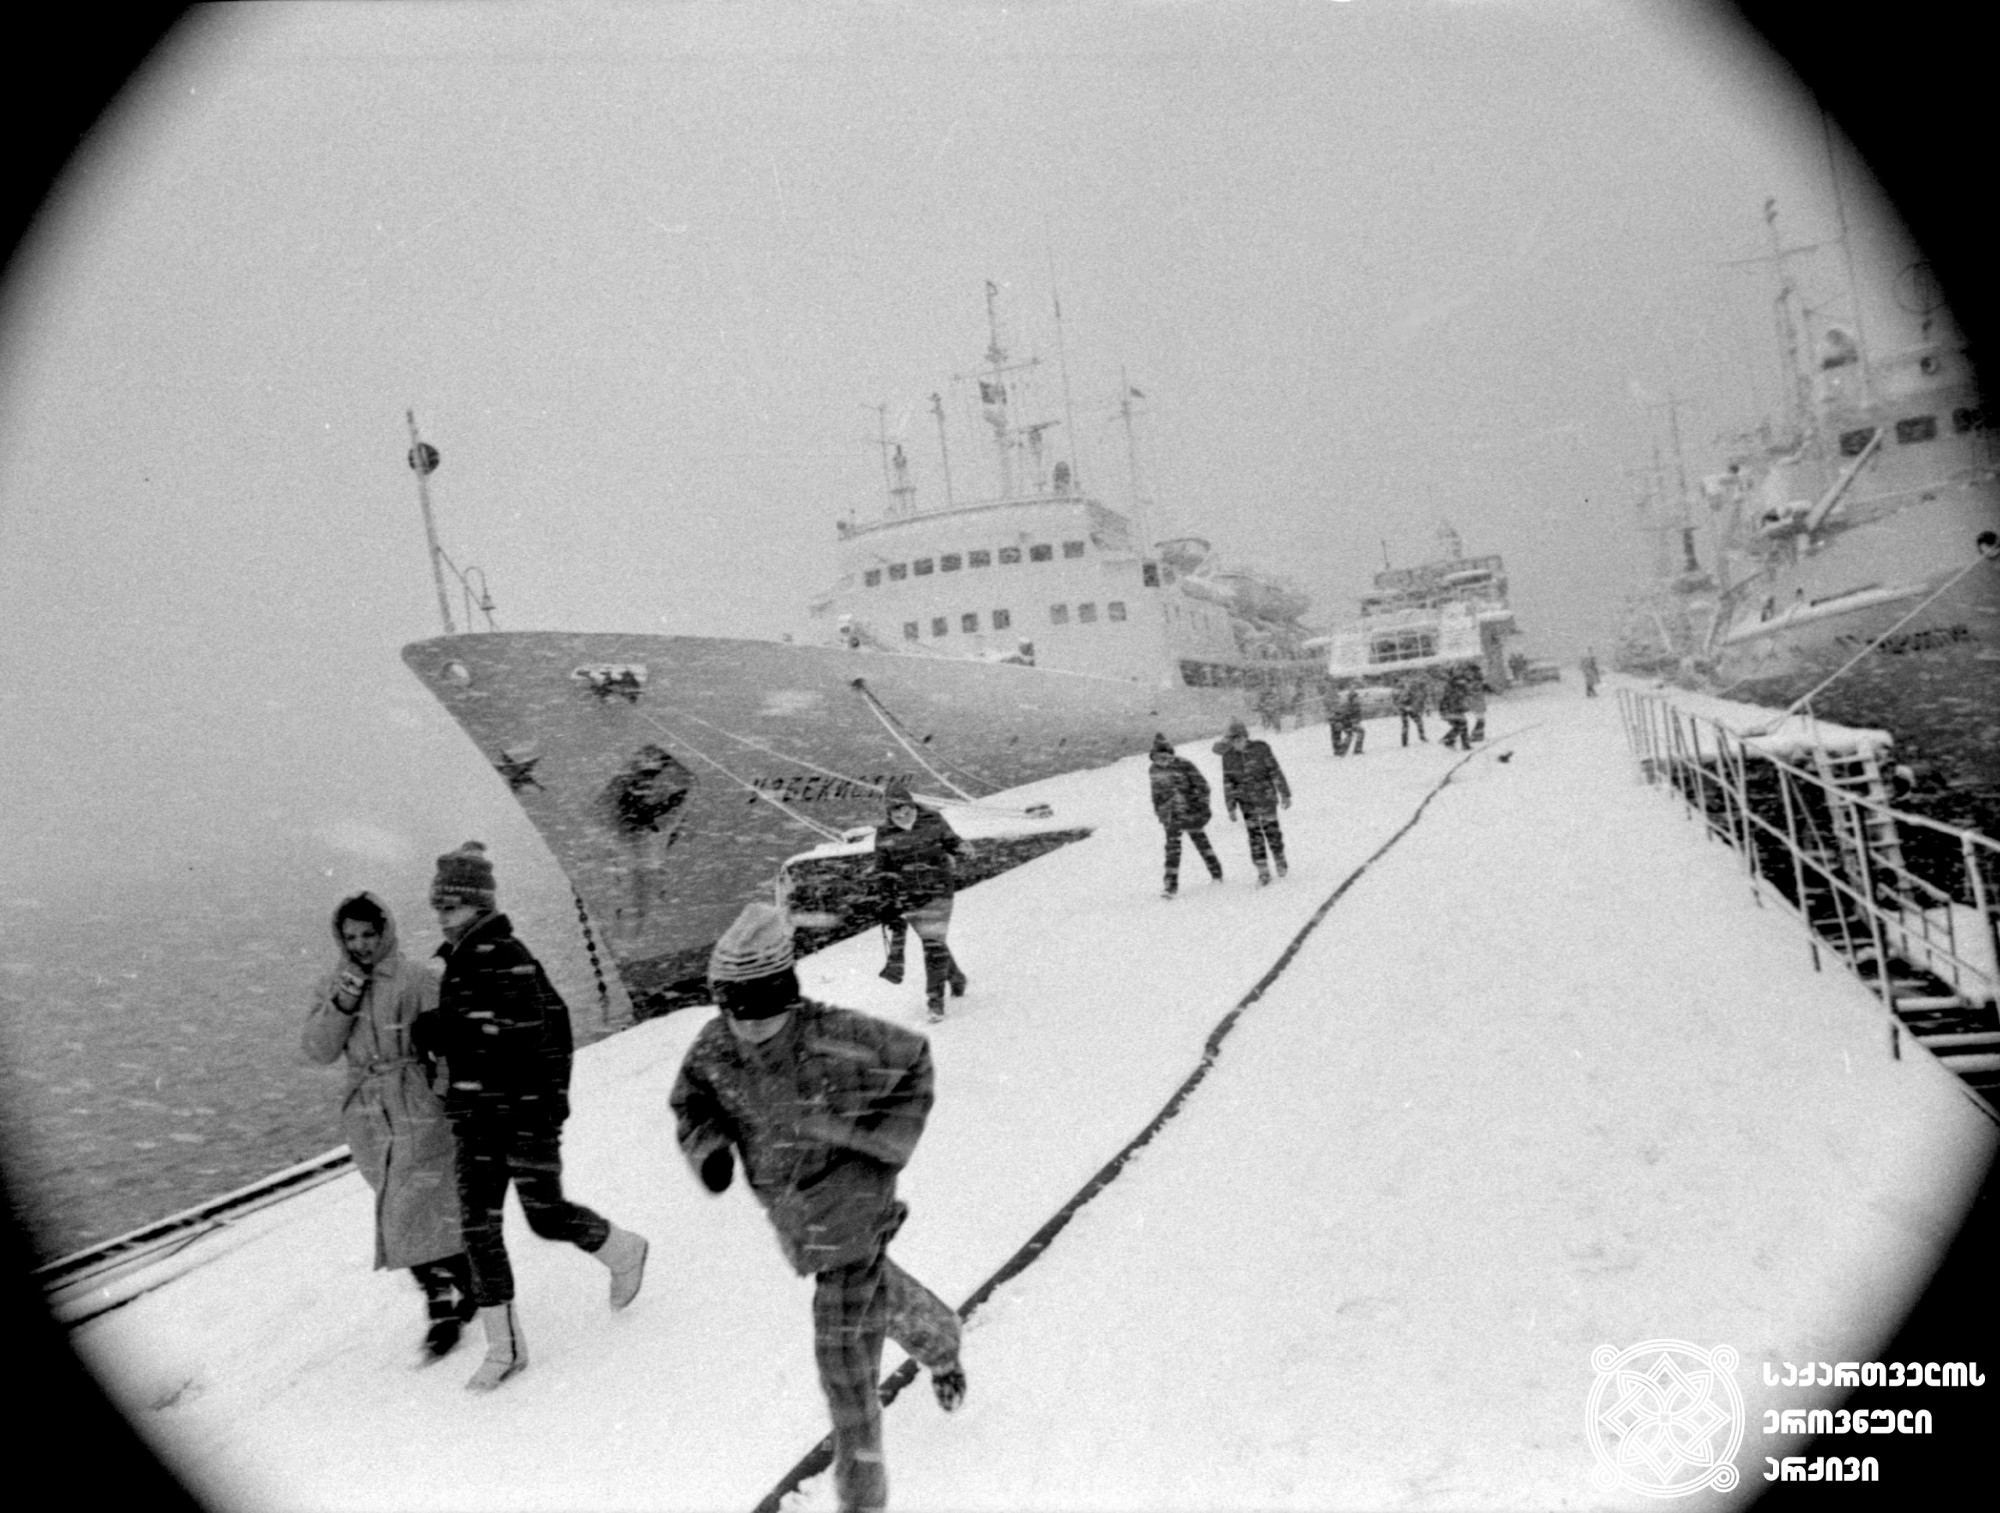 სოხუმის პორტი <br>
1989 წელი <br>
ფოტოგრაფი ბ. სოკოლოვი <br>
Port of Sokhumi <br>
1989 <br>
Photo by b. Sokolov